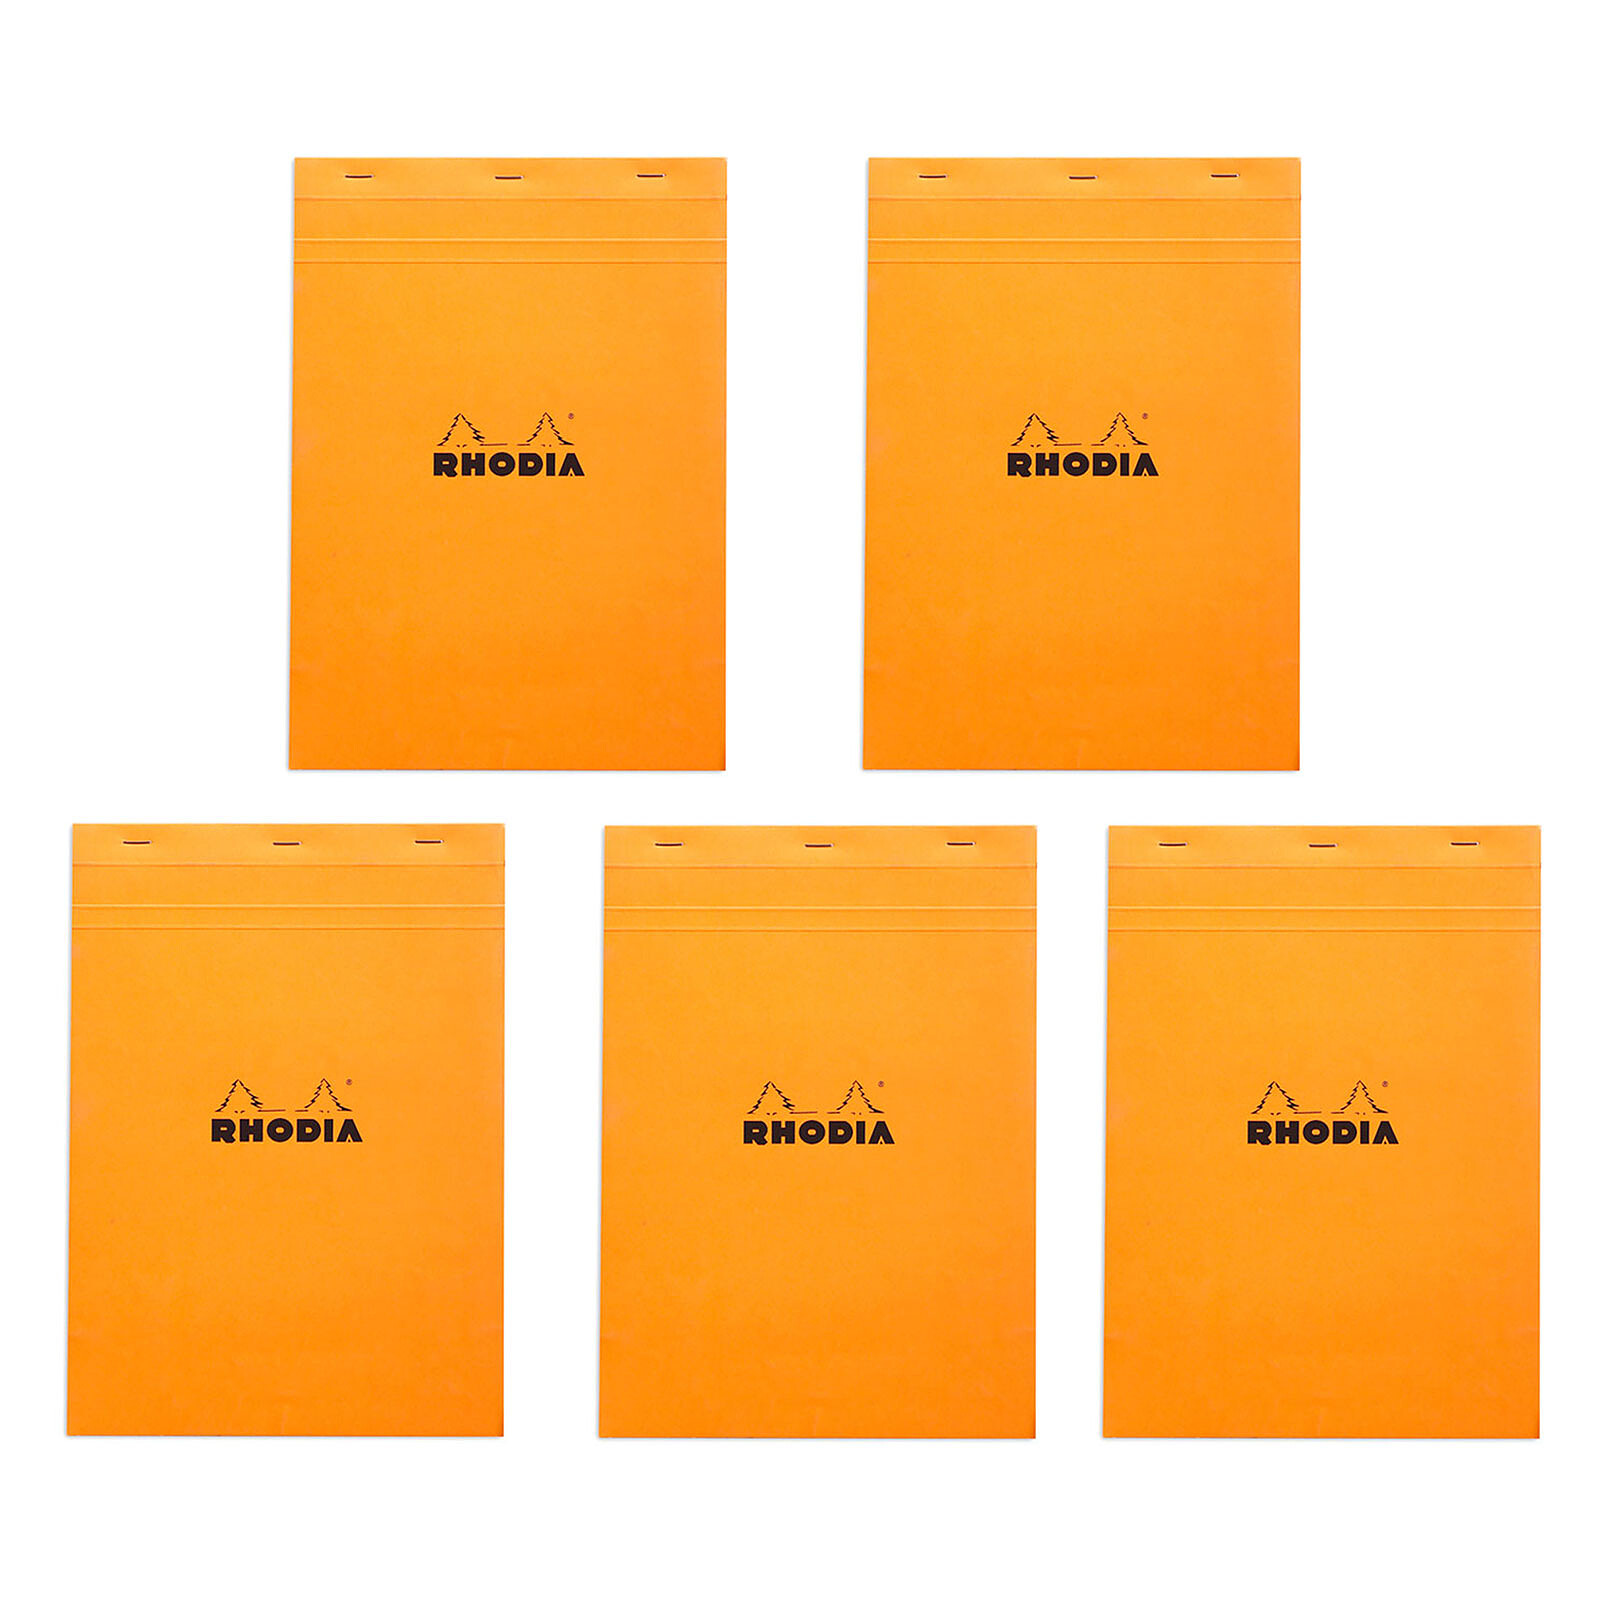 Rhodia - Bloc notes - 11 x 17 cm - petits carreaux - 80g Pas Cher